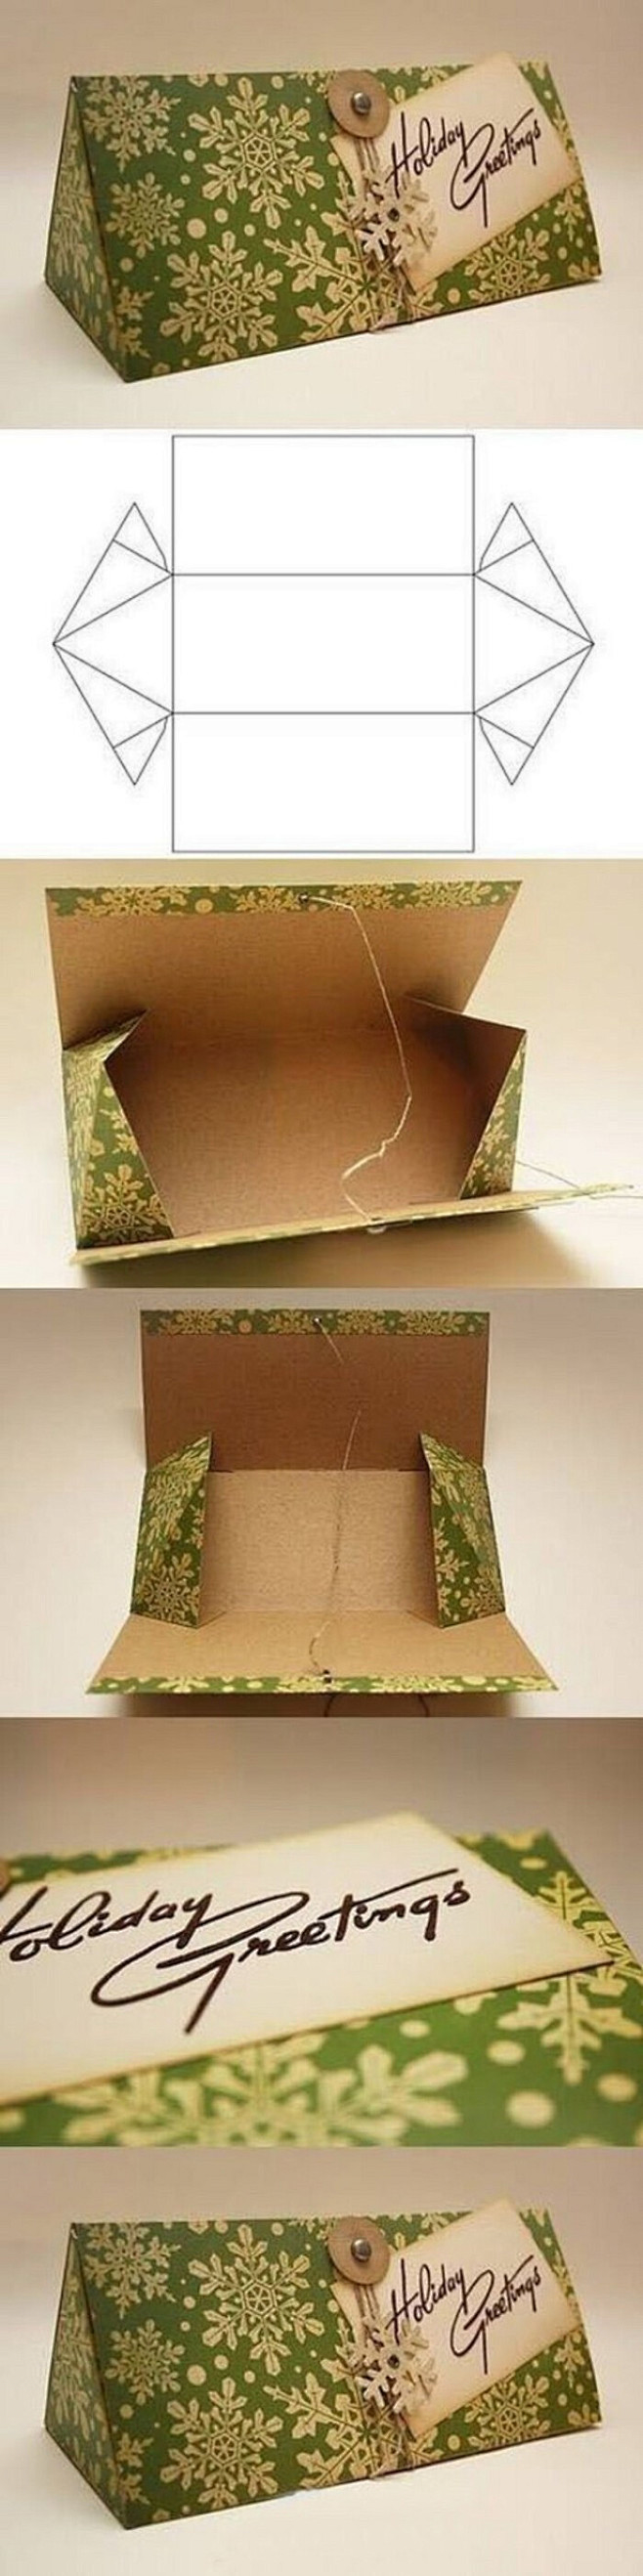 简易包装盒制作步骤图片